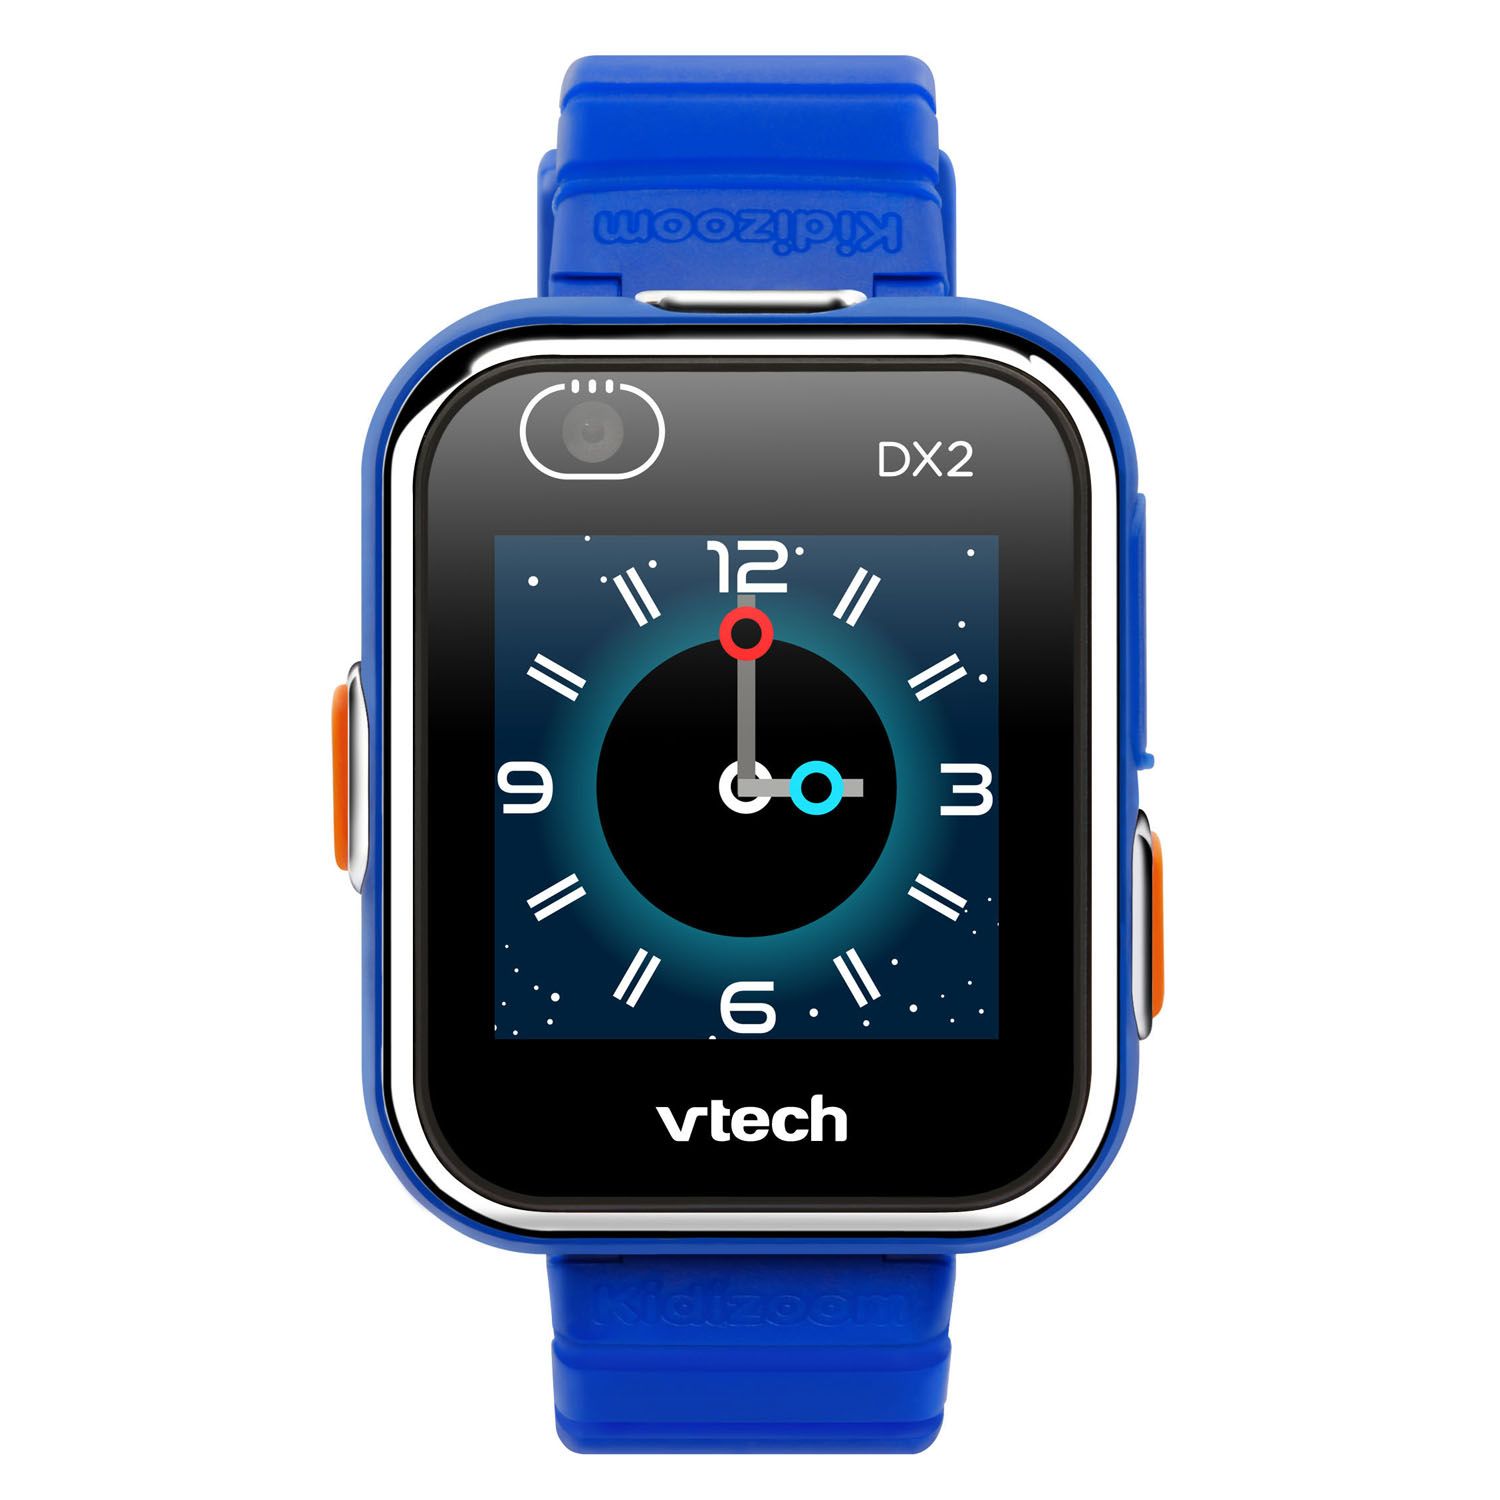 vtech kidizoom smartwatch